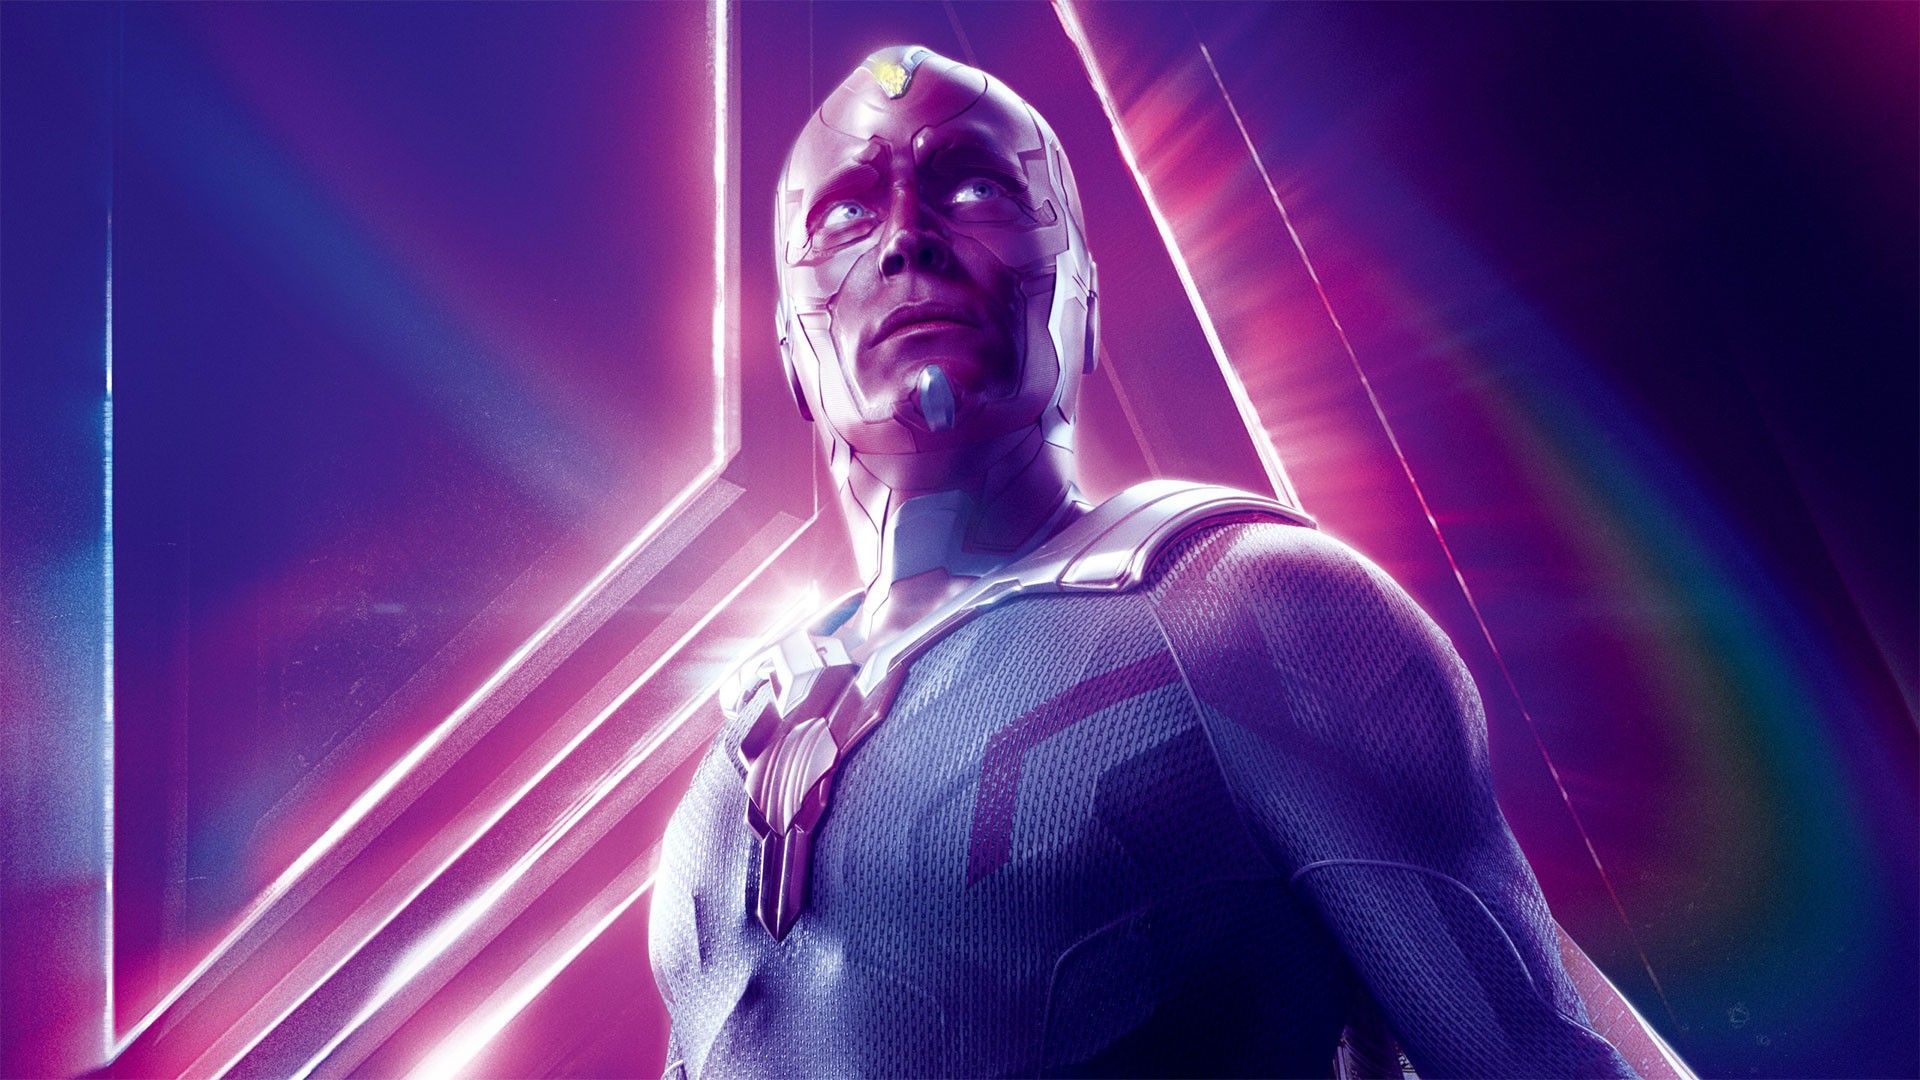 Paul Bettany Vision Avengers Endgame Wallpaper HD. Vision avengers, Avengers infinity war, Avengers